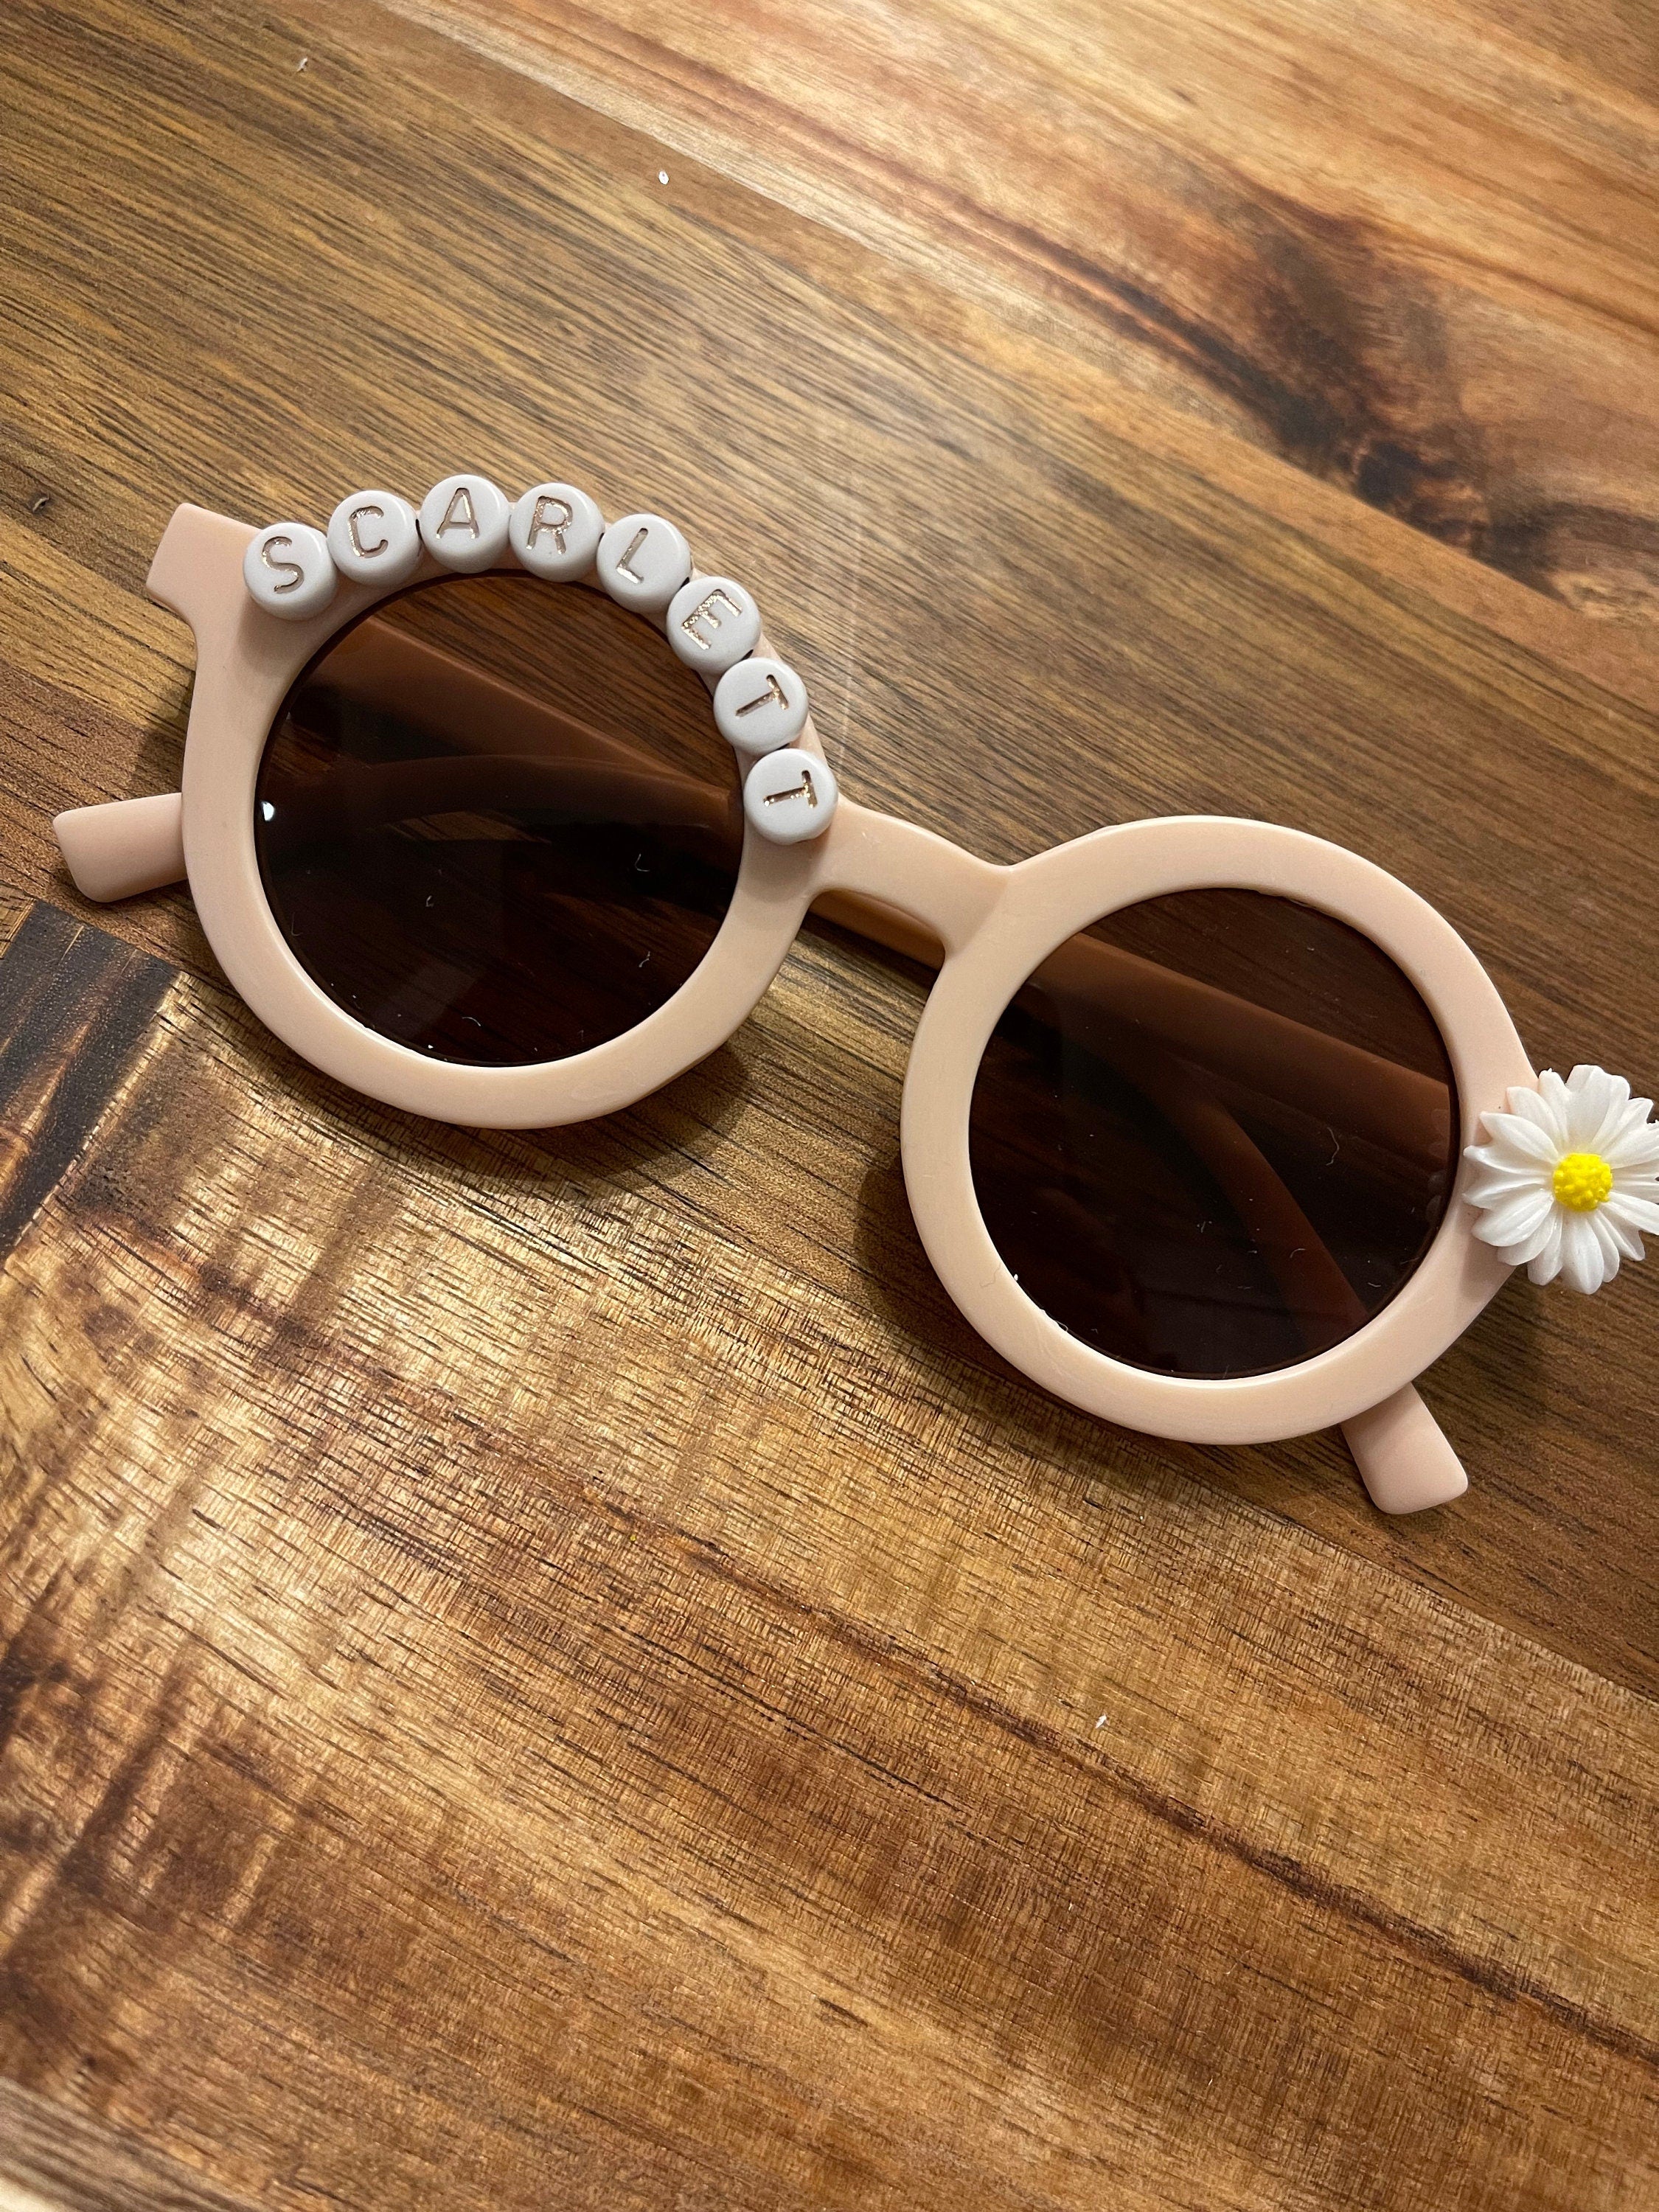 Custom Baby Sunglass / Personalized Baby Sunglasses / Personalized Daisy Sunglasses / Flower Sunglasses / Baby Girl Sunglasses